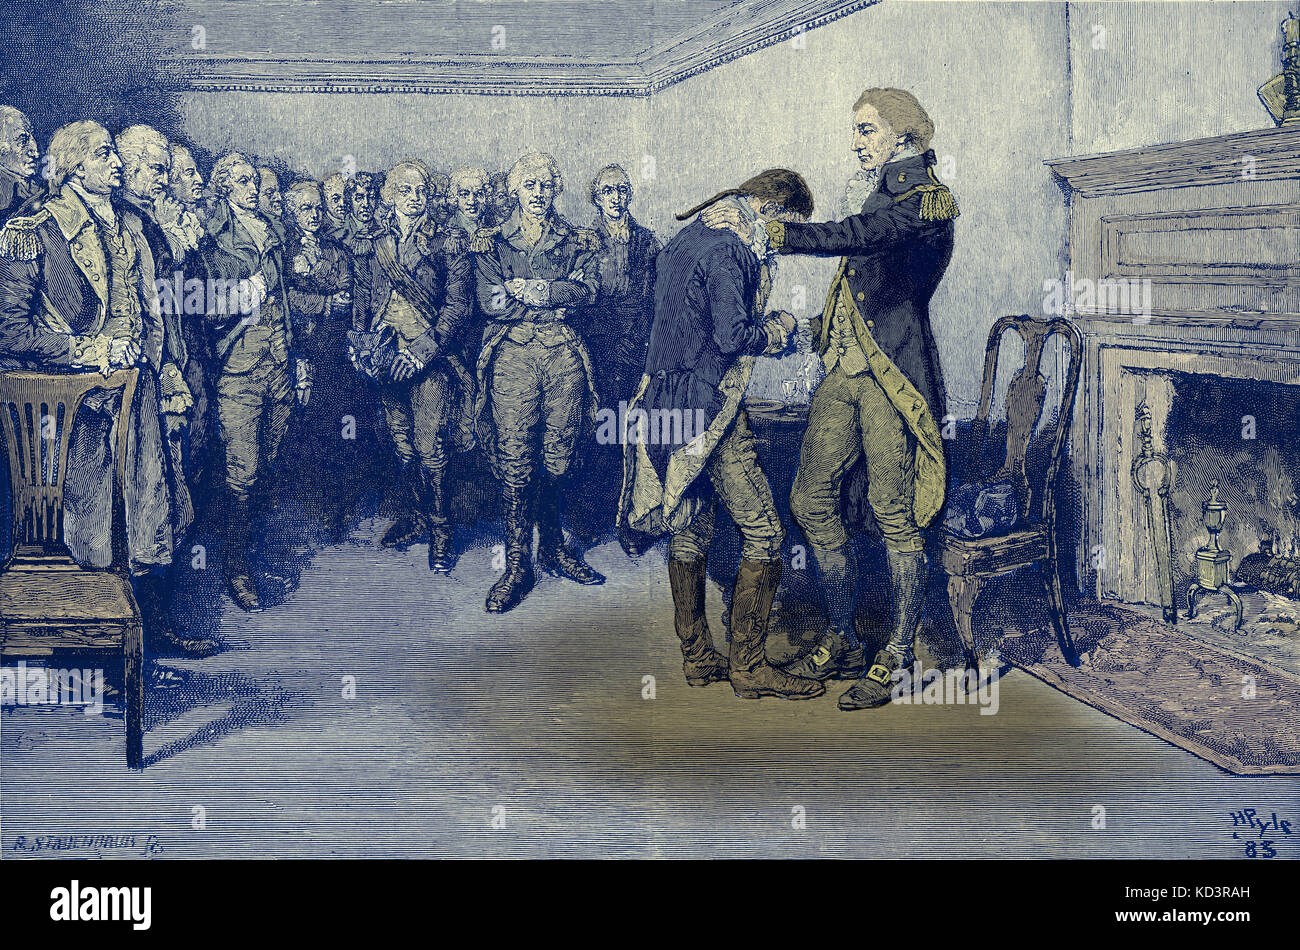 Washington prend congé de ses officiers, 4 décembre 1783, après la fin de la Révolution américaine. Illustration de Howard Pyle, 1896 Banque D'Images